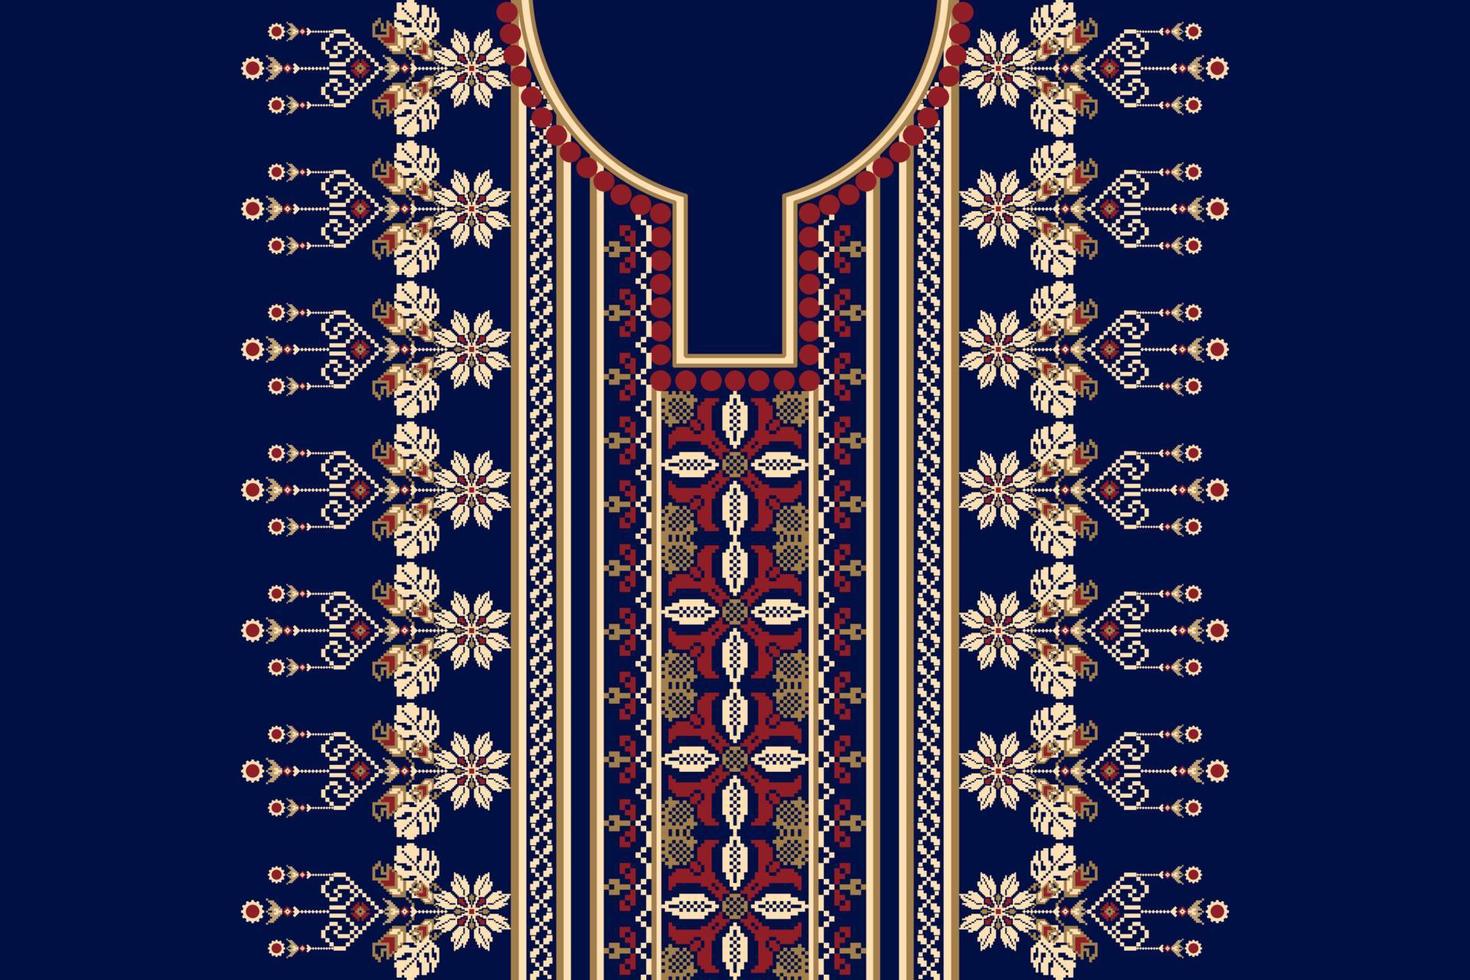 hermoso bordado de escote floral sobre fondo azul marino.patrón oriental étnico geométrico tradicional.ilustración vectorial abstracta de estilo azteca.diseño para textura,tela,mujeres de moda vistiendo. vector